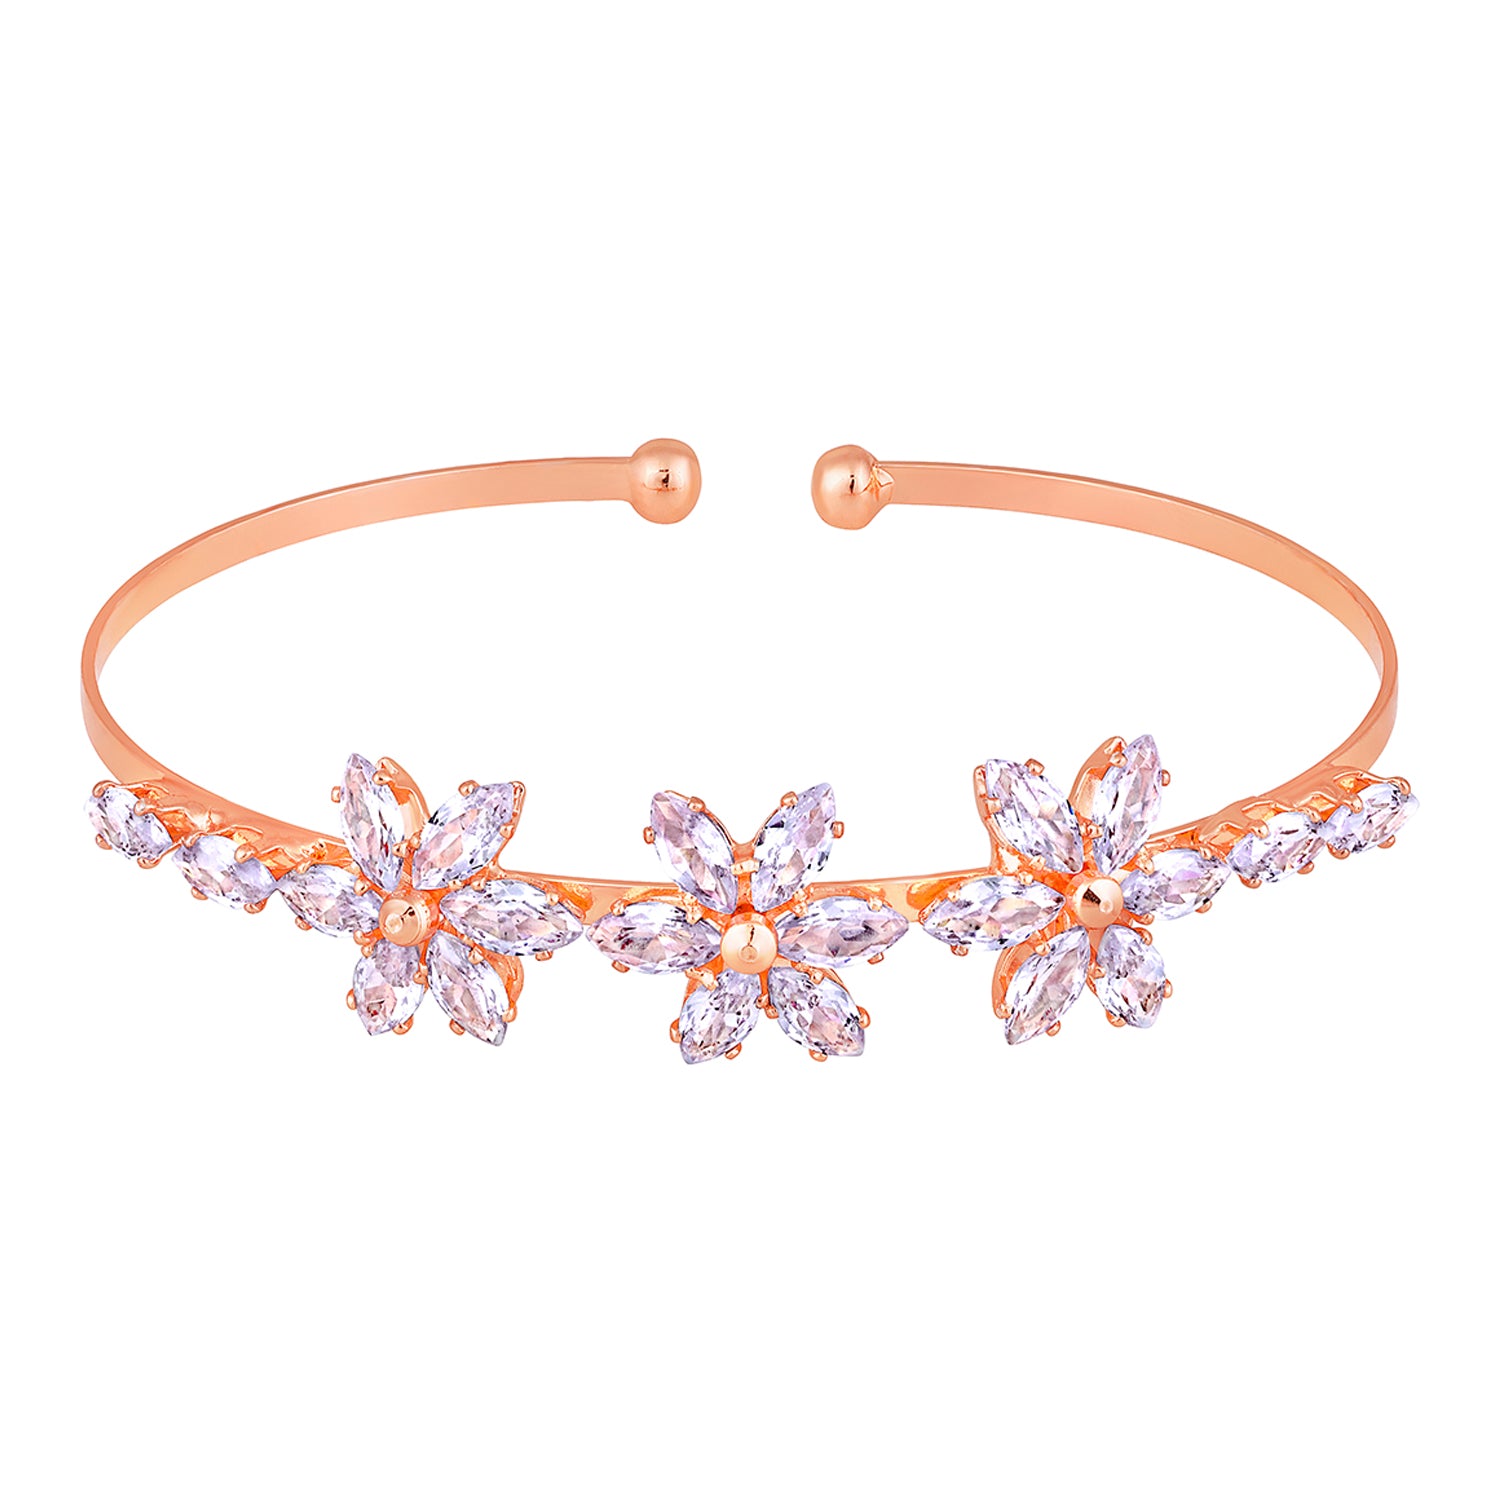 Floral Shaped CZ Studded Adjustable Kada / Bracelet for Women